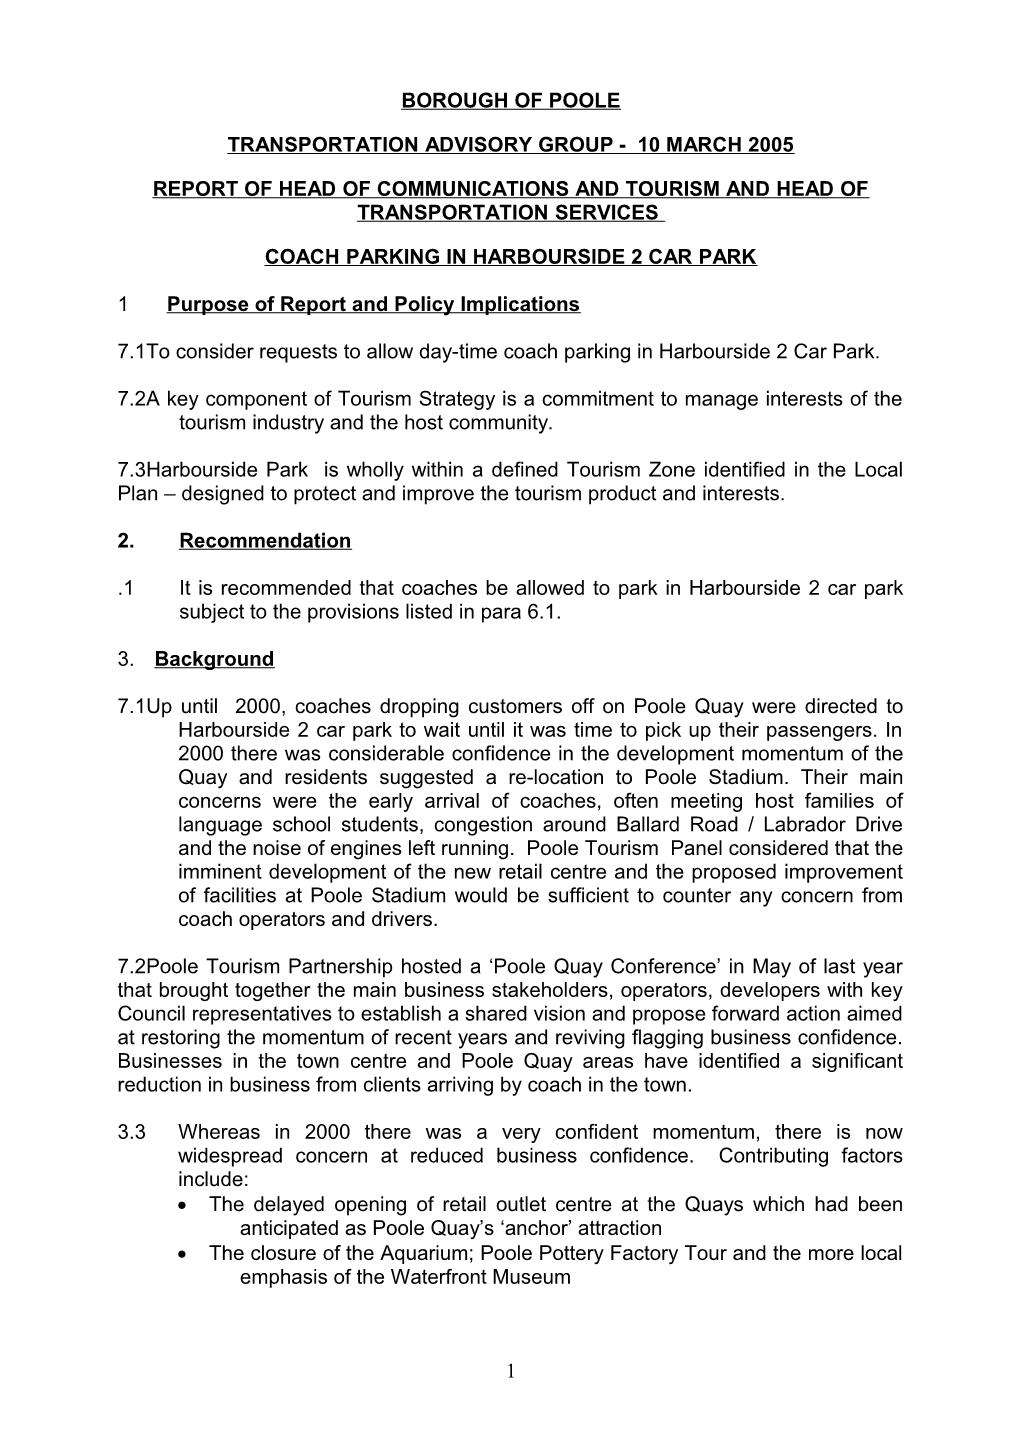 PFD - Councillor Parker - 10 March 2005 - Coach Parking in Harbourside 2 Car Park - Report